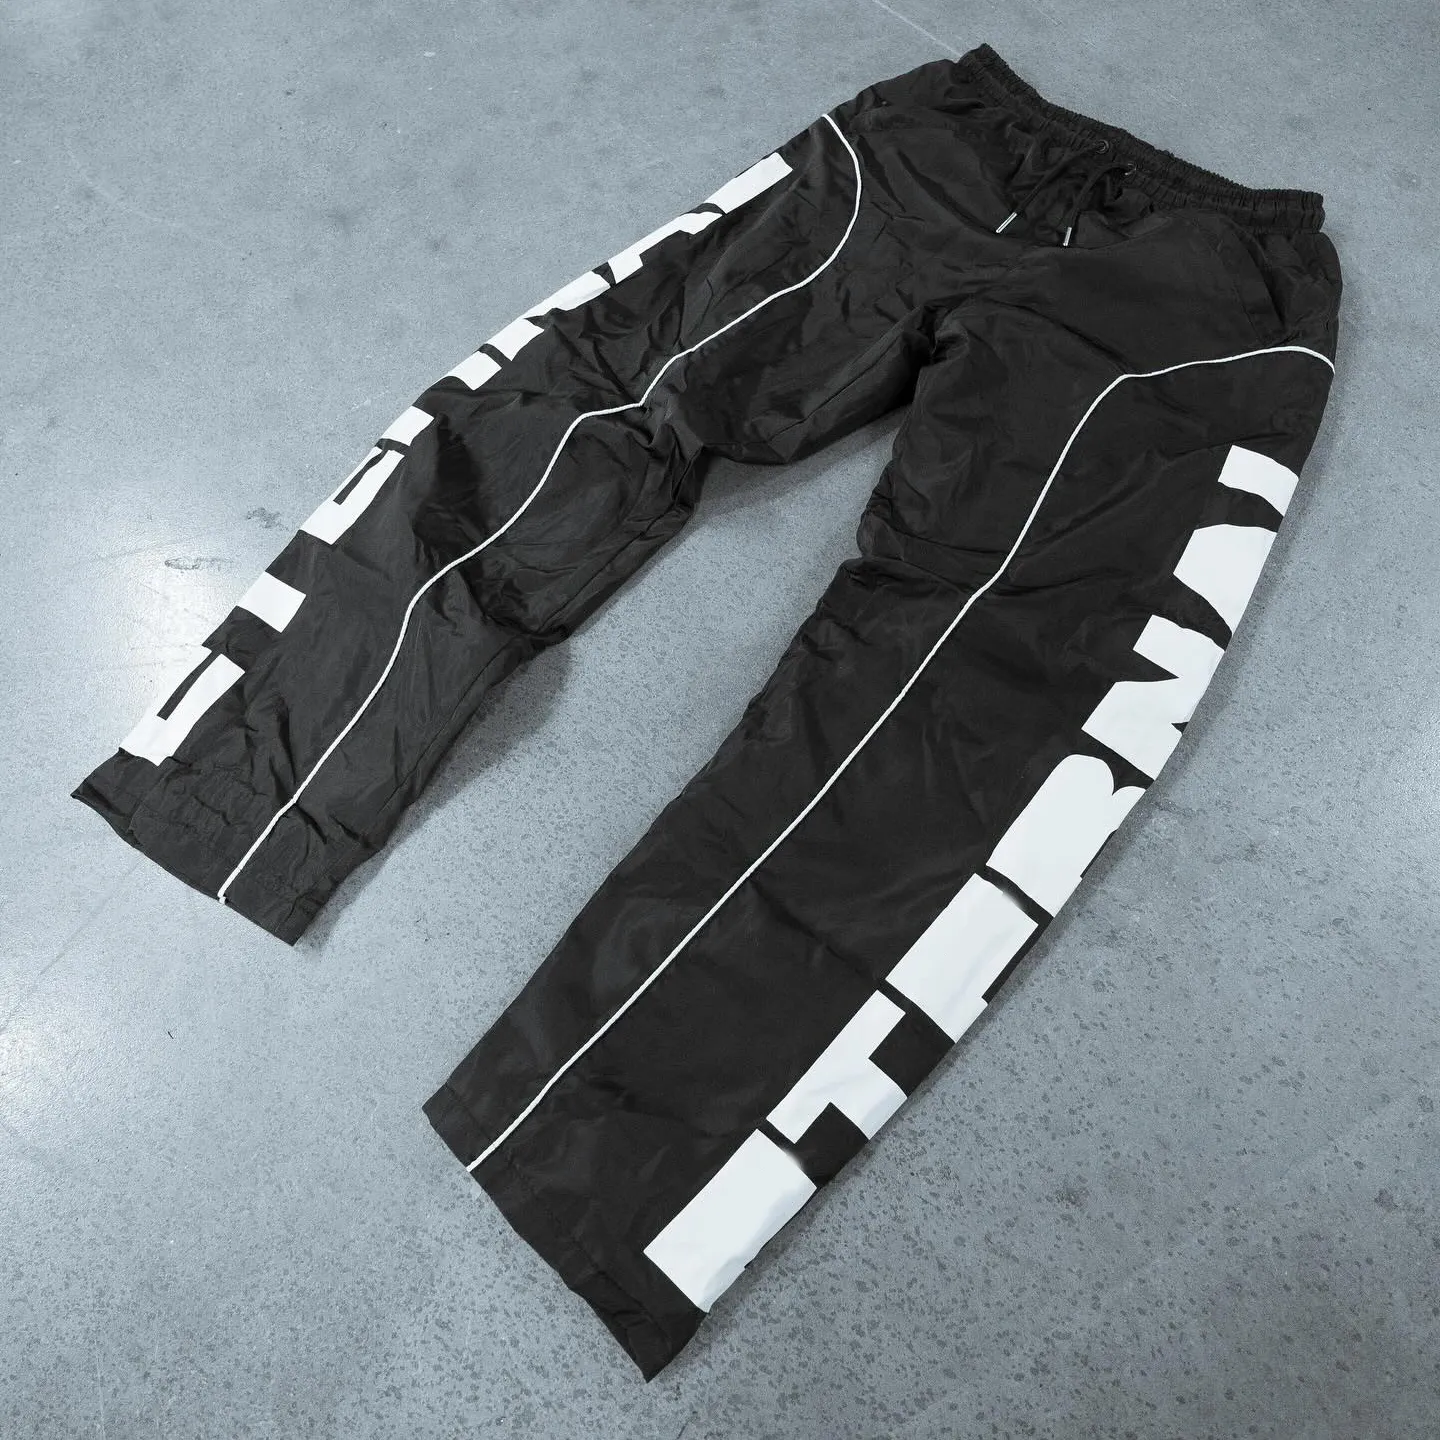 पुरुषों के नायलॉन के लिए कस्टम उच्च गुणवत्ता वाले स्पोर्ट्स रनिंग ओवरसाइज़्ड बैगी प्रिंट ट्रैक पैंट रिफ्लेक्टिव विंडब्रेकर पैंट